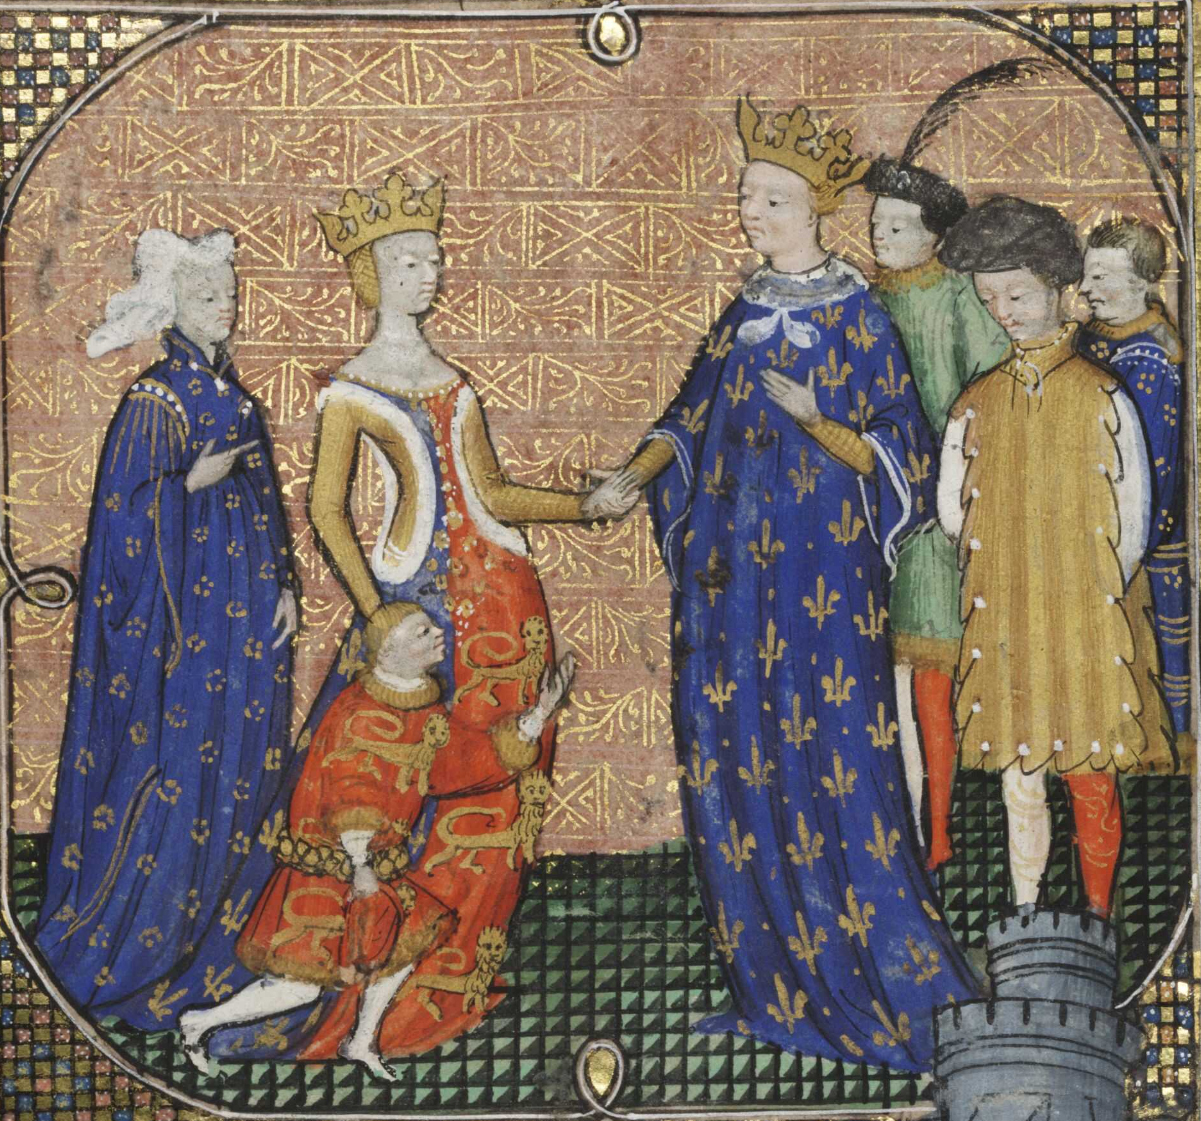 Le futur Édouard III d'Angleterre rendant hommage à Charles IV de France sous l'égide d'Isabelle de France, mère d'Édouard et sœur de Charles, en 1325. Enluminure du XVe siècle.